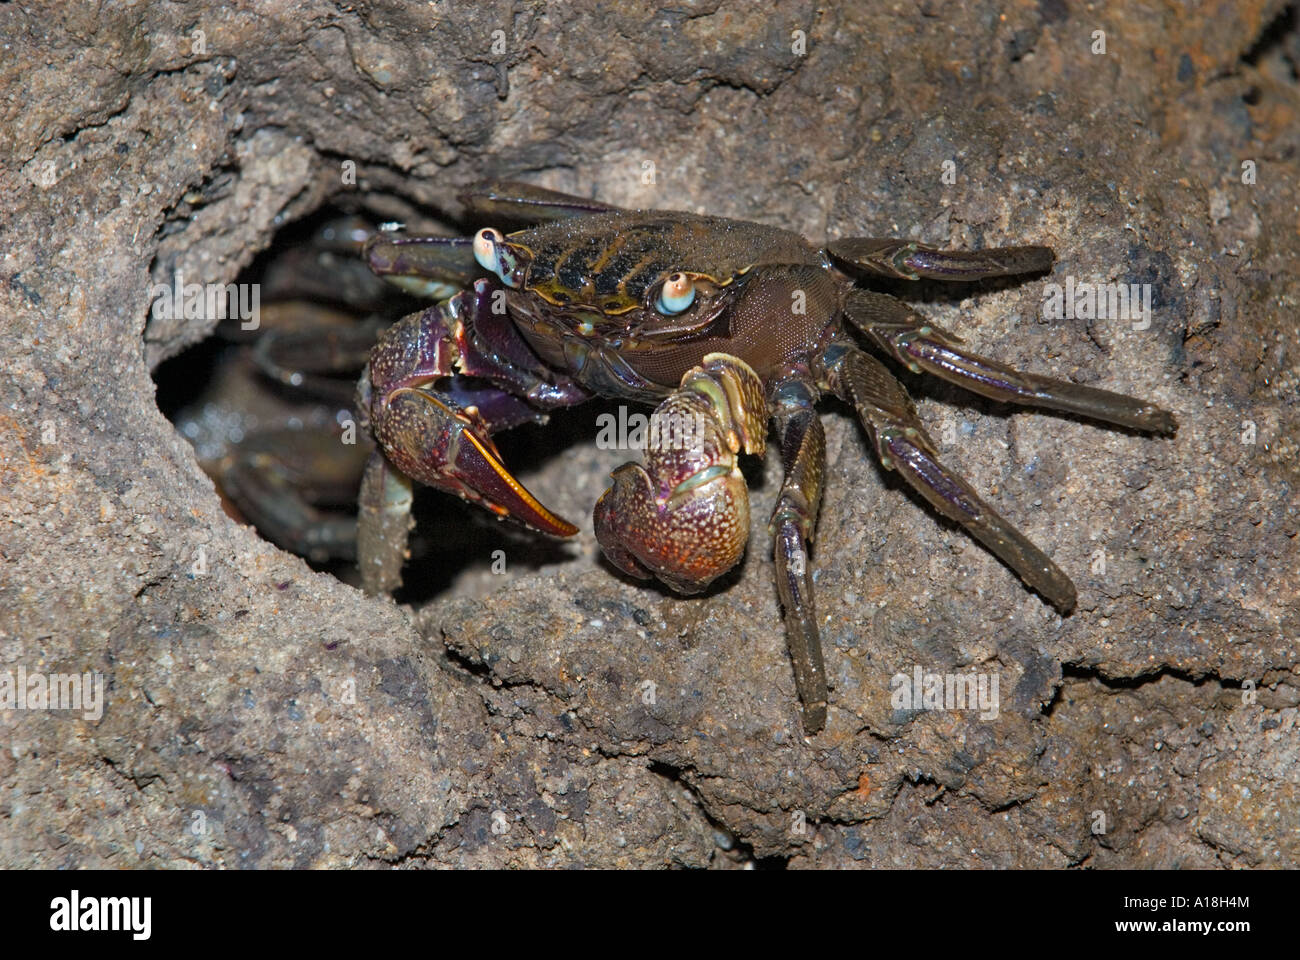 Le crabe dans les racines de l'écosystème marin des mangroves de la réserve de SUNGEI BULOH ASIE Singapour caverne trou Banque D'Images